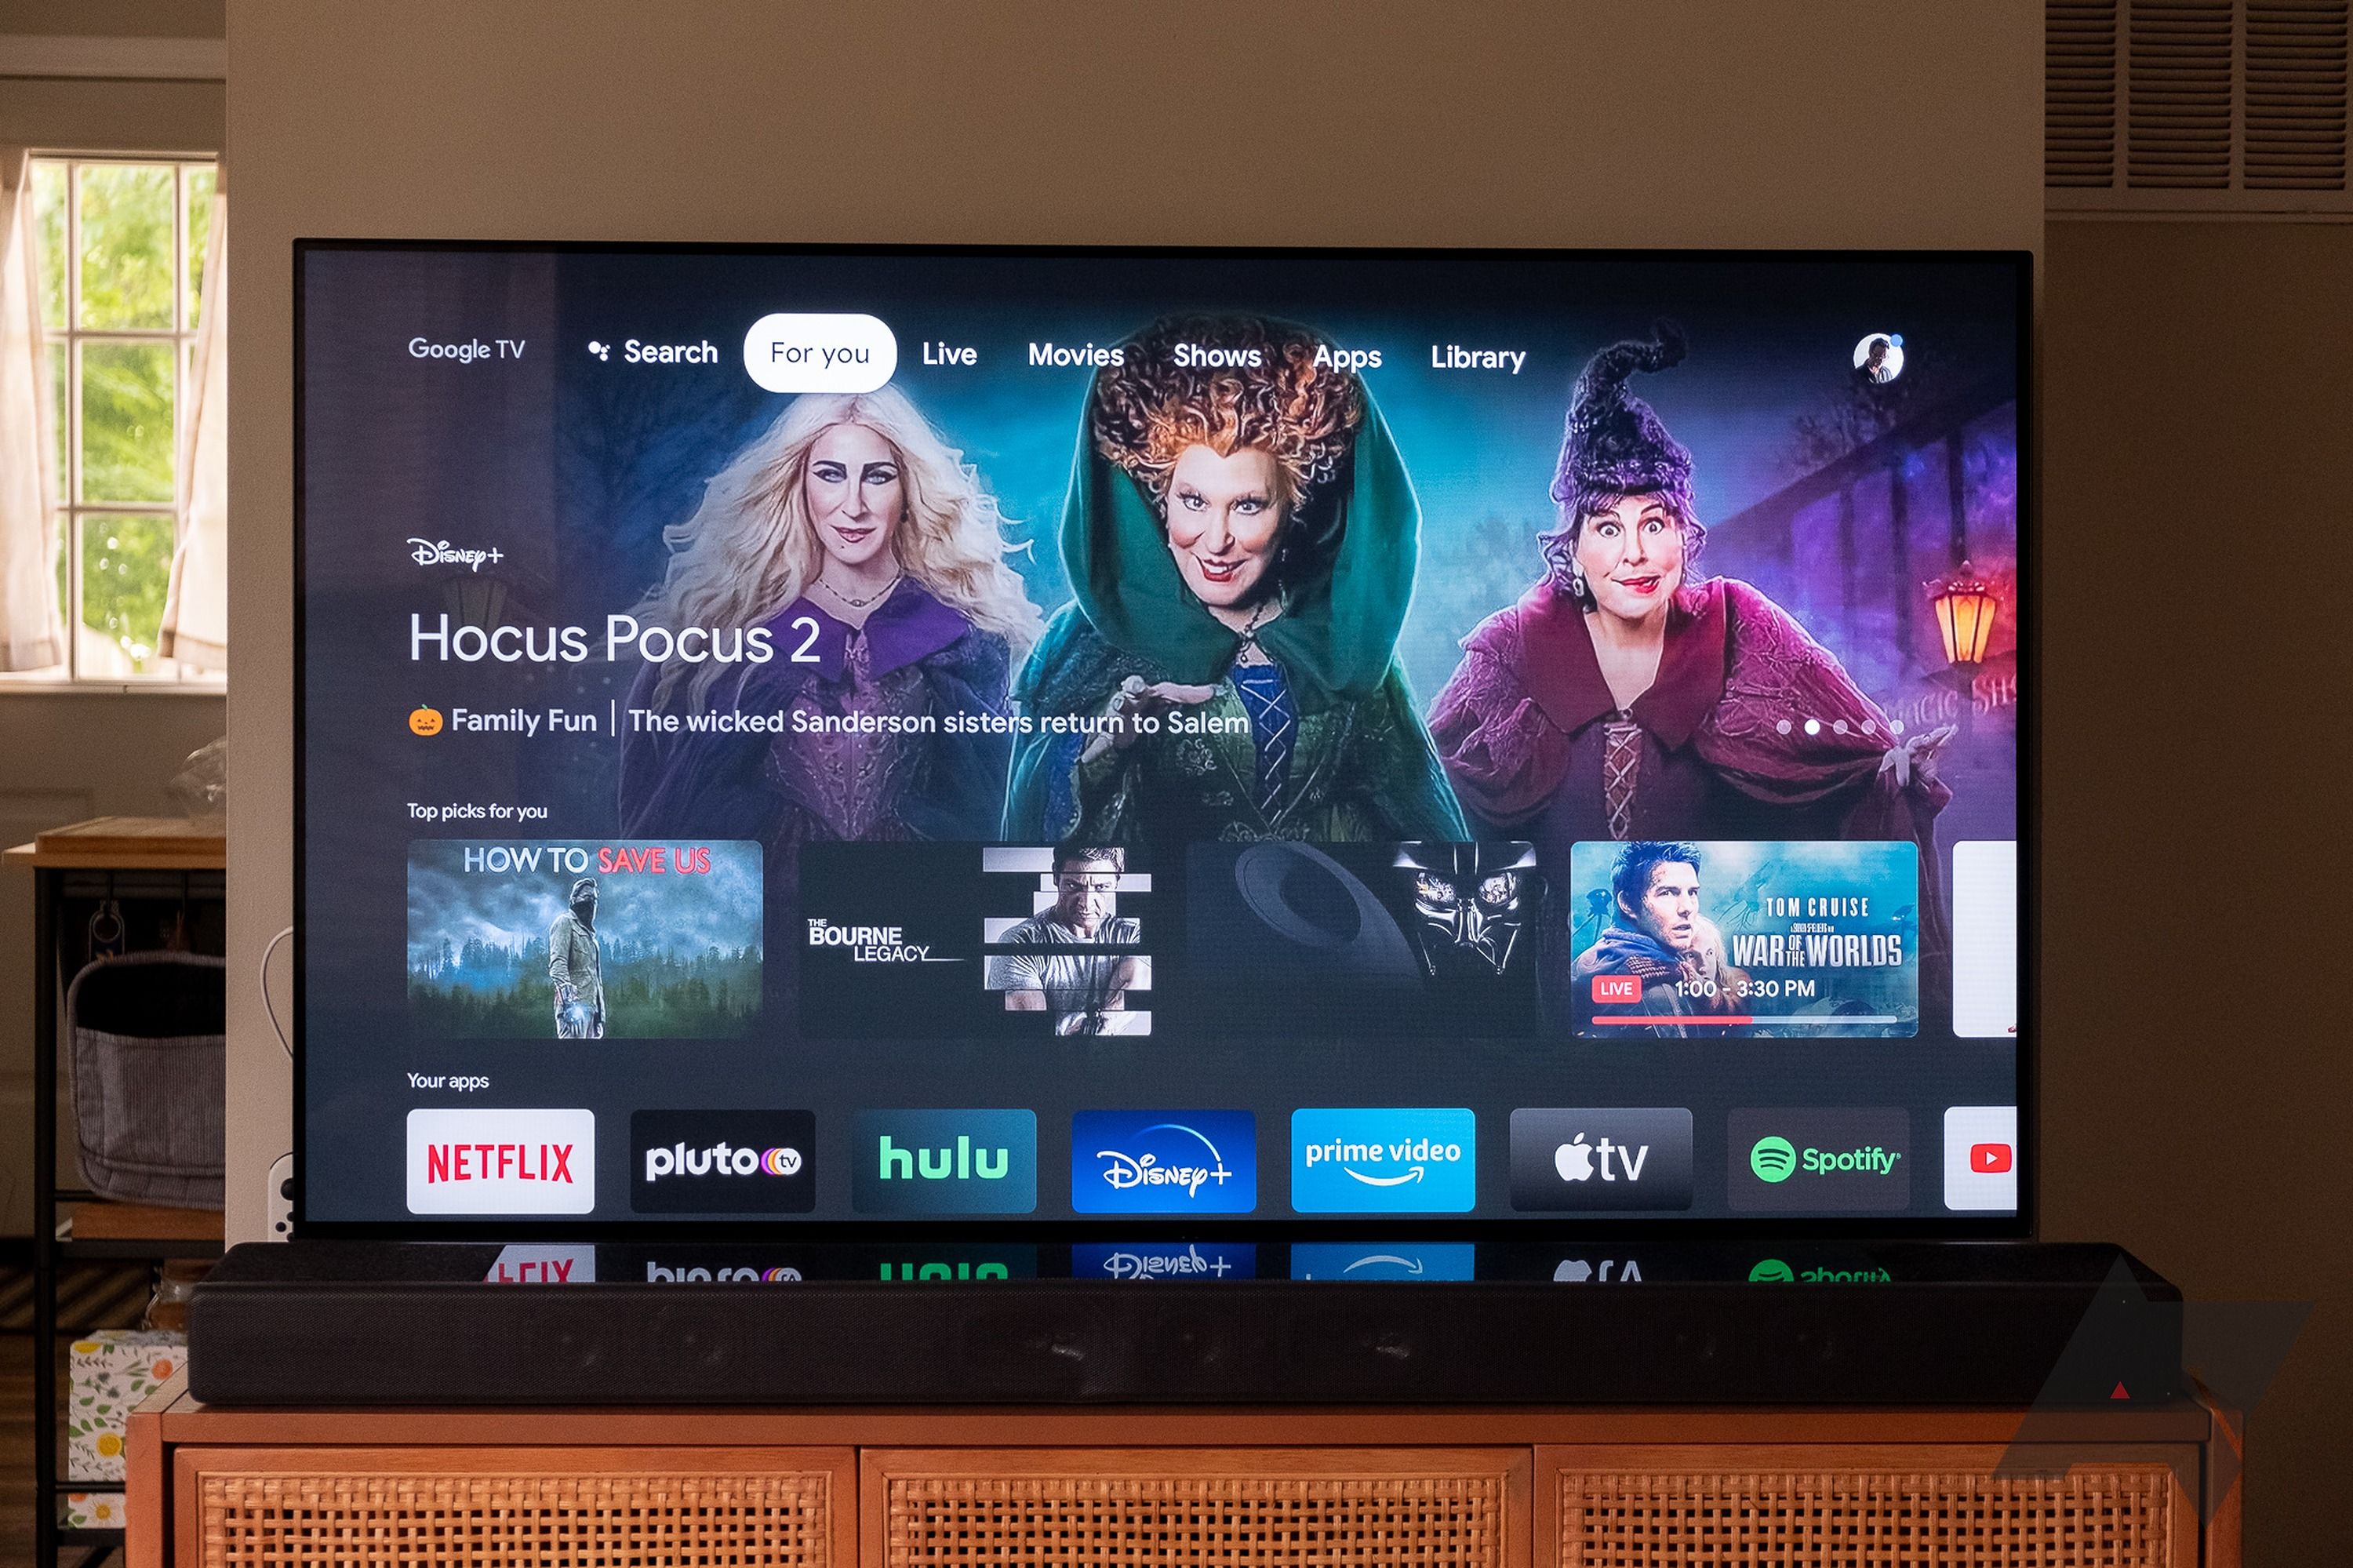 Uma TV grande em um suporte em uma casa com a tela inicial do Google TV exibida.